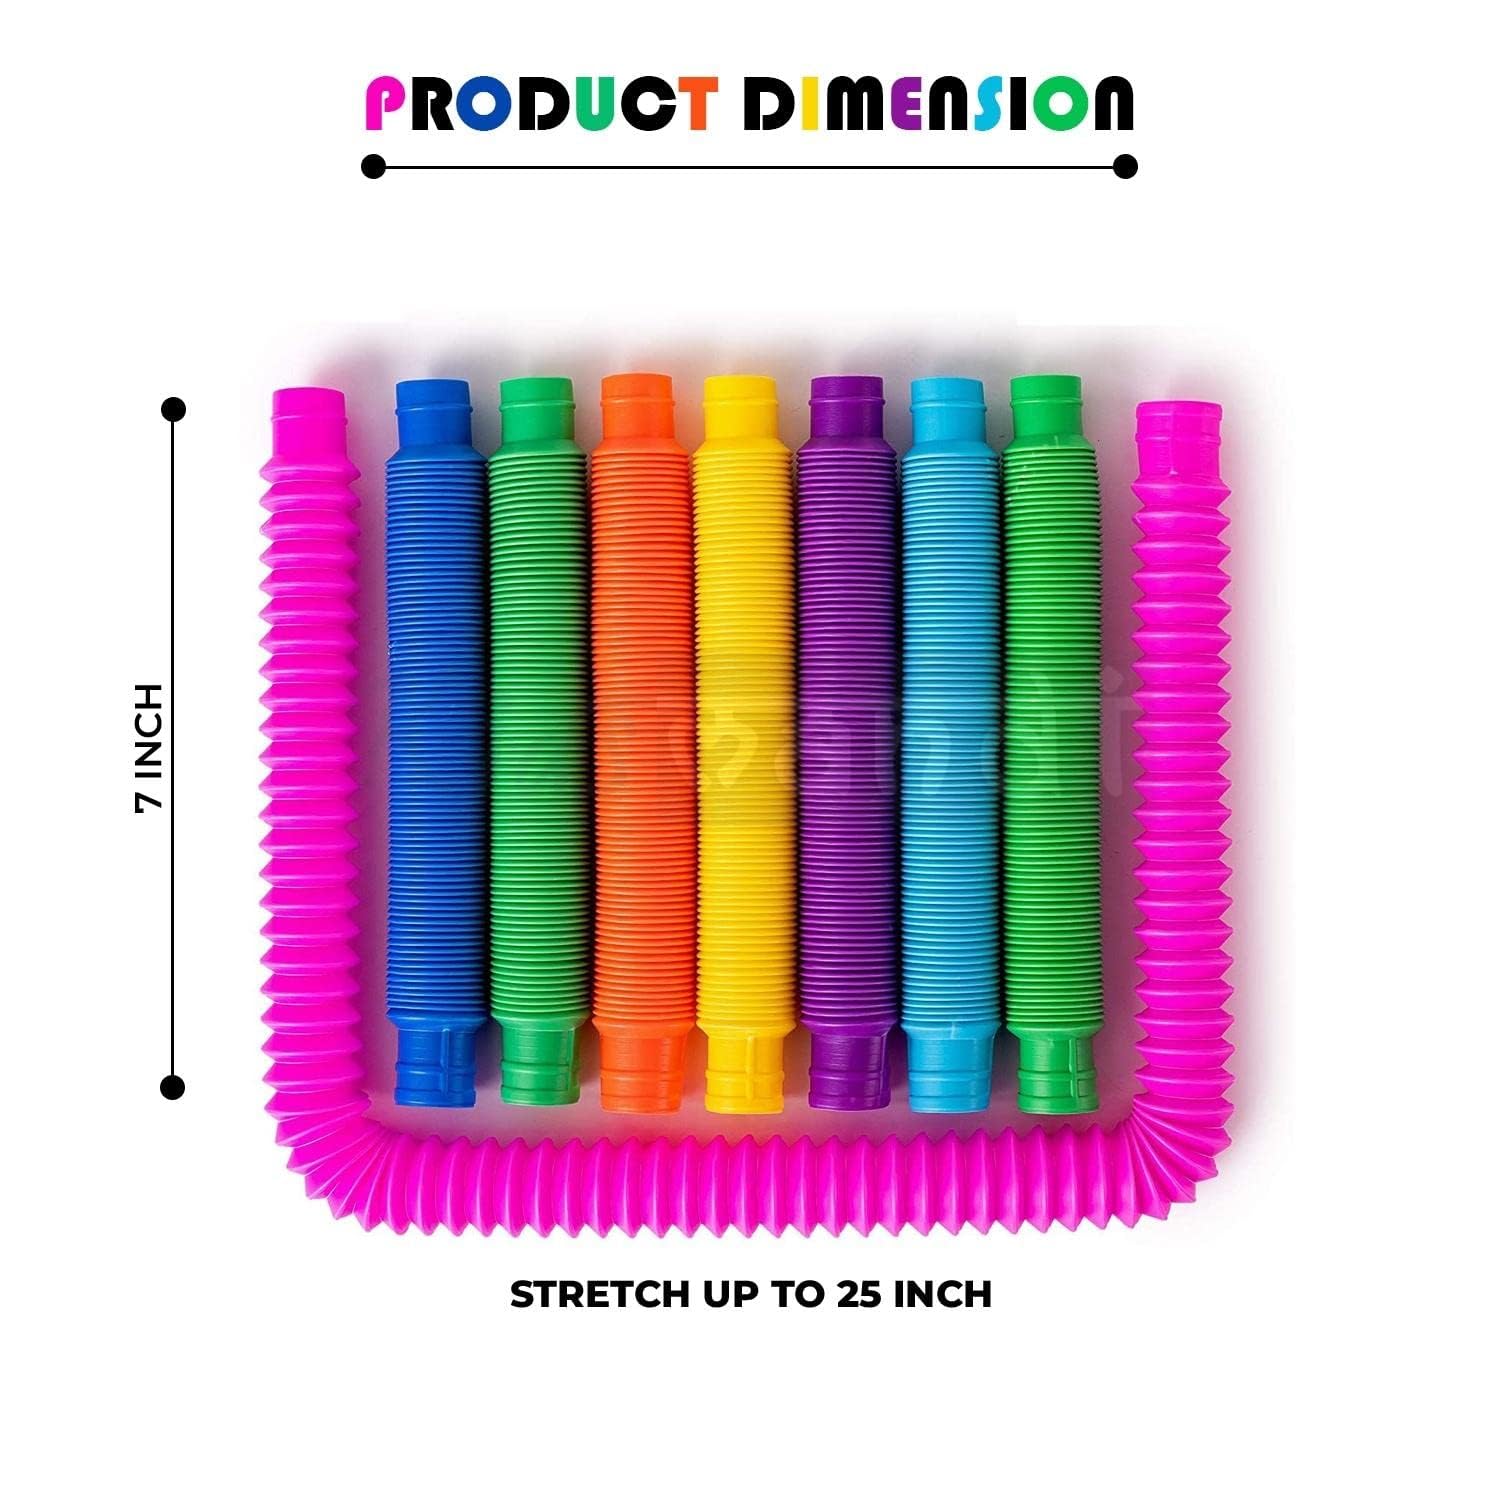 Kids Mandi Pop Tube Fidget Toy in various colors.